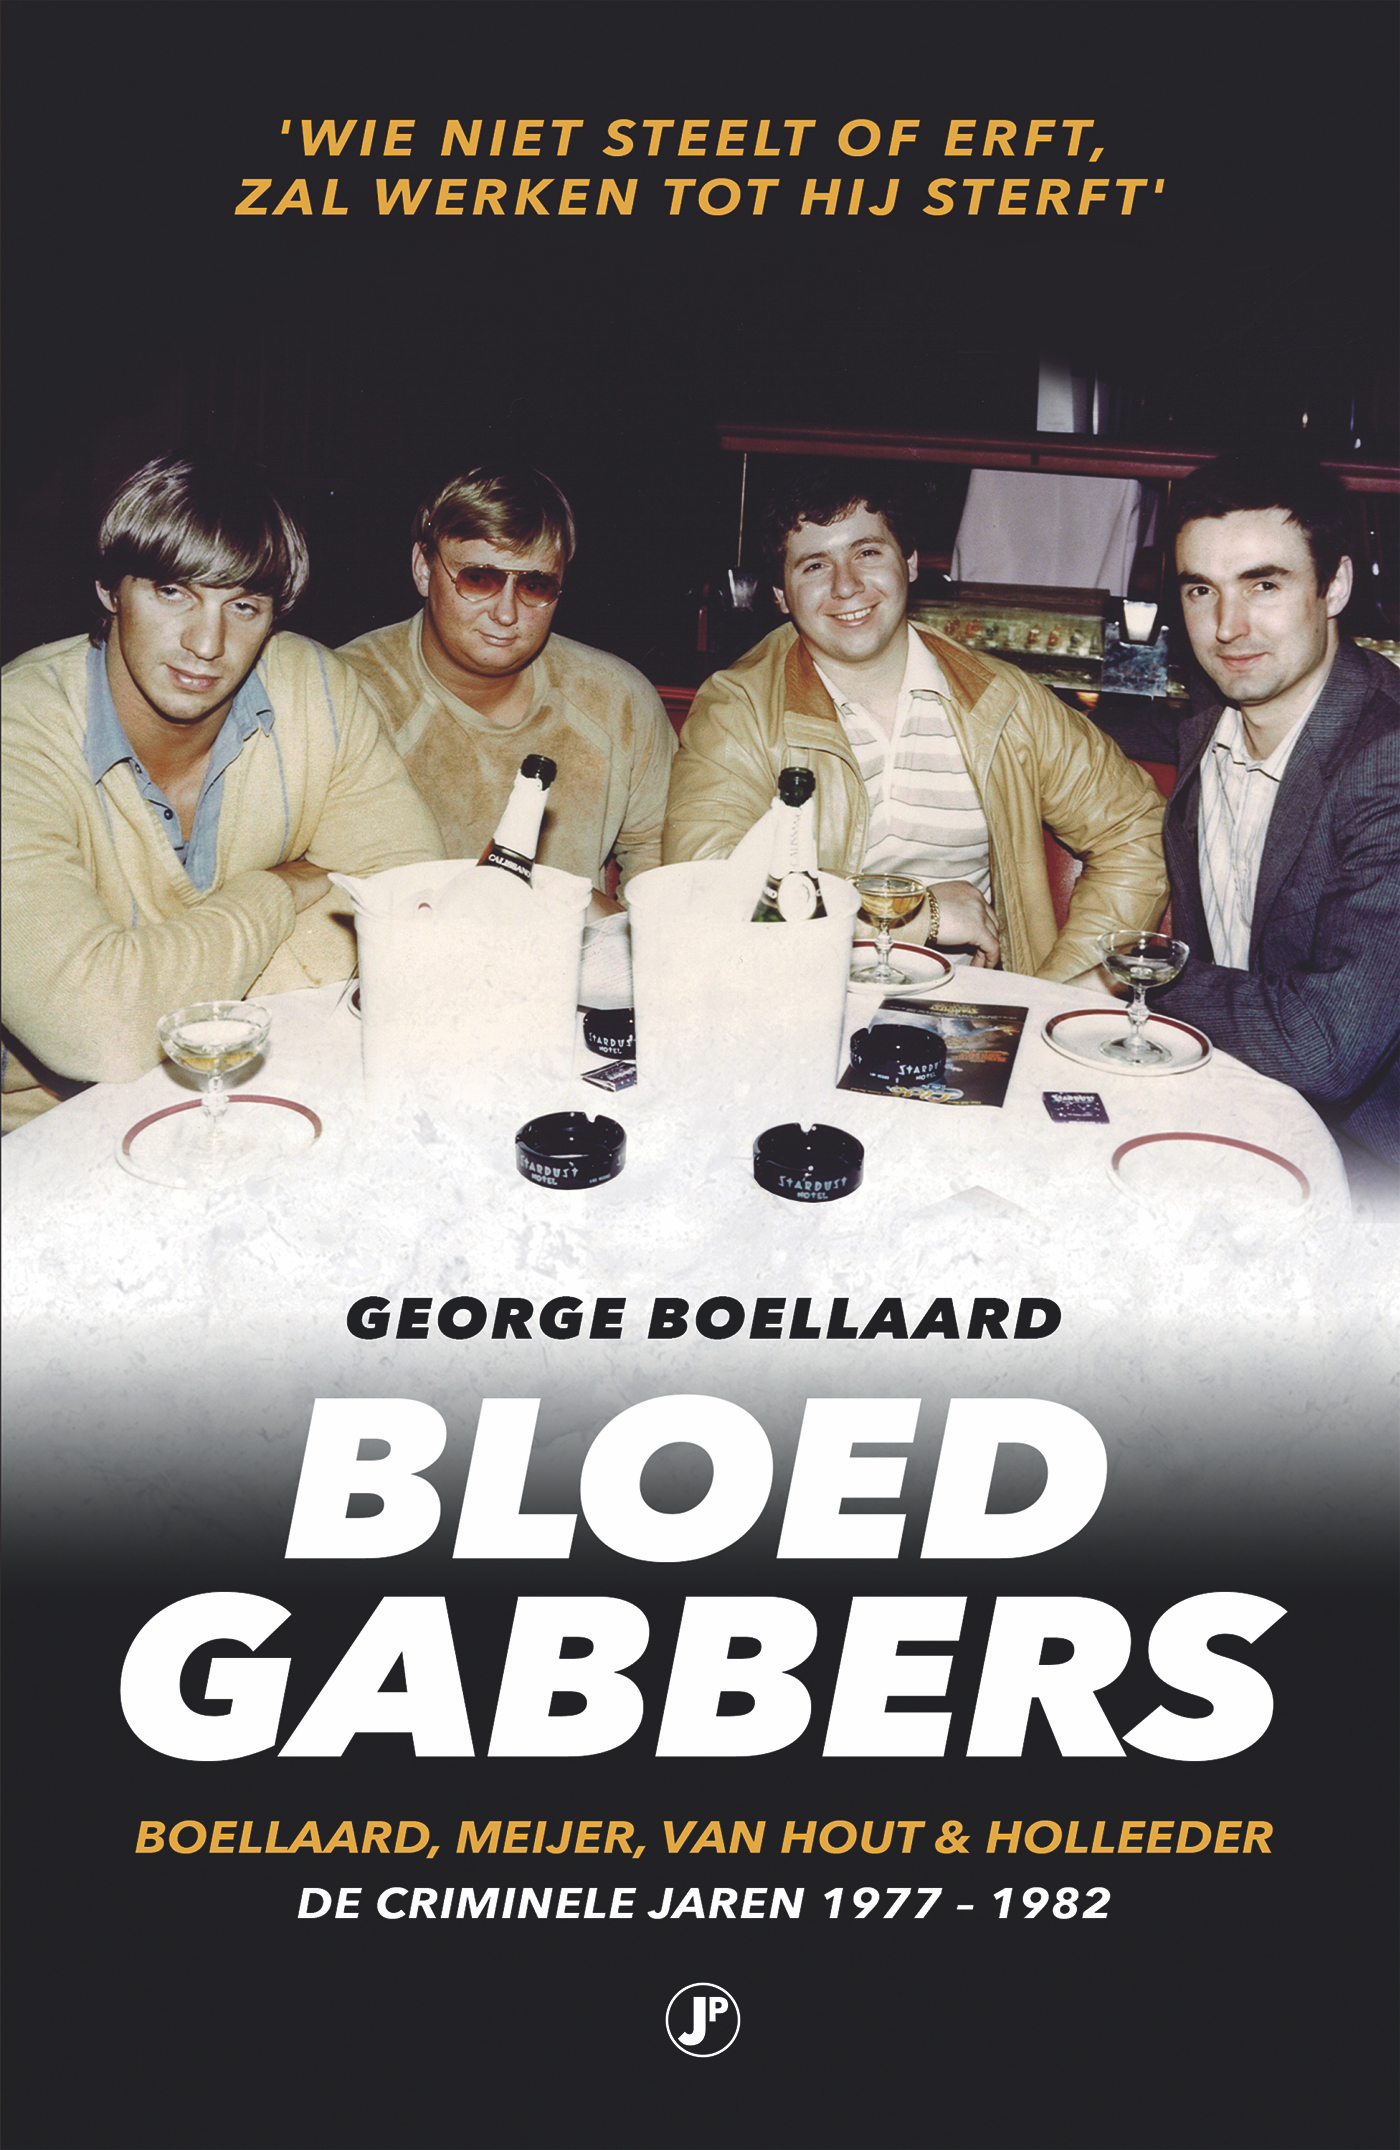 Boellaard, George - Bloedgabbers